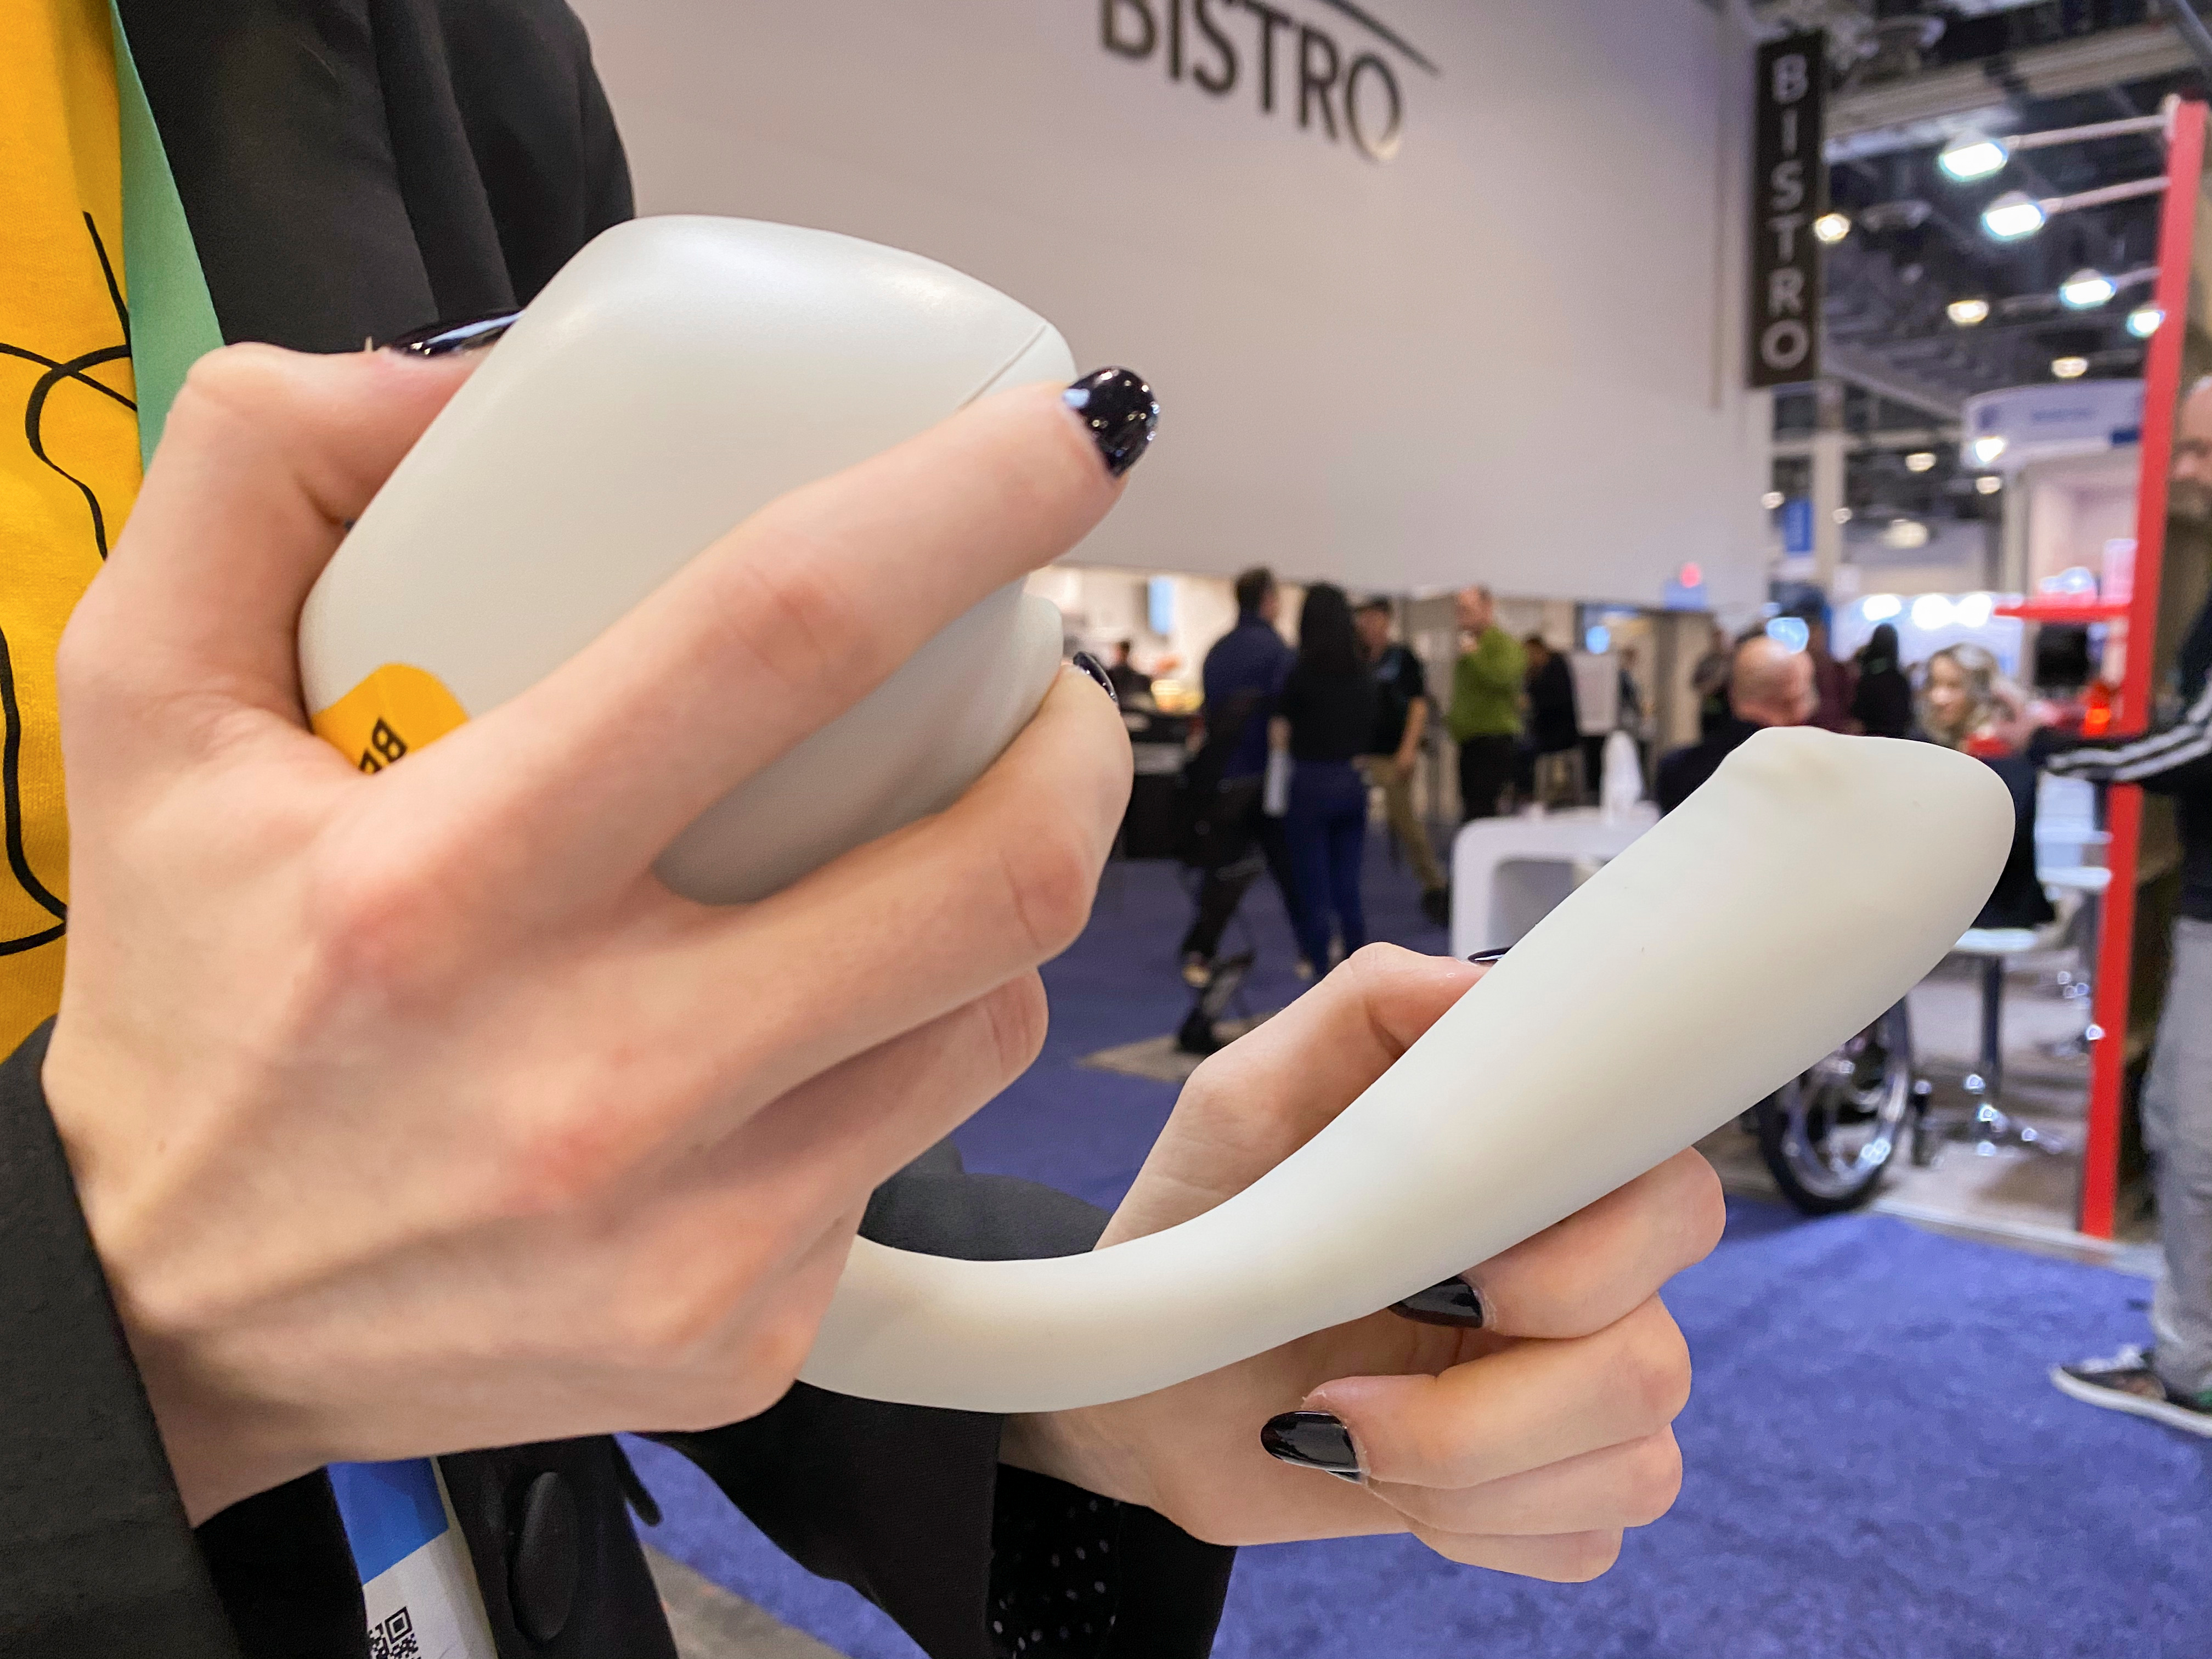 Dispositivo de estimulación dual de Lora DiCarlo, un dispositivo sexual presentado en la feria CES 2020 en Las Vegas (REUTERS / Nathan Frandino REUTERS/Nathan Frandino)